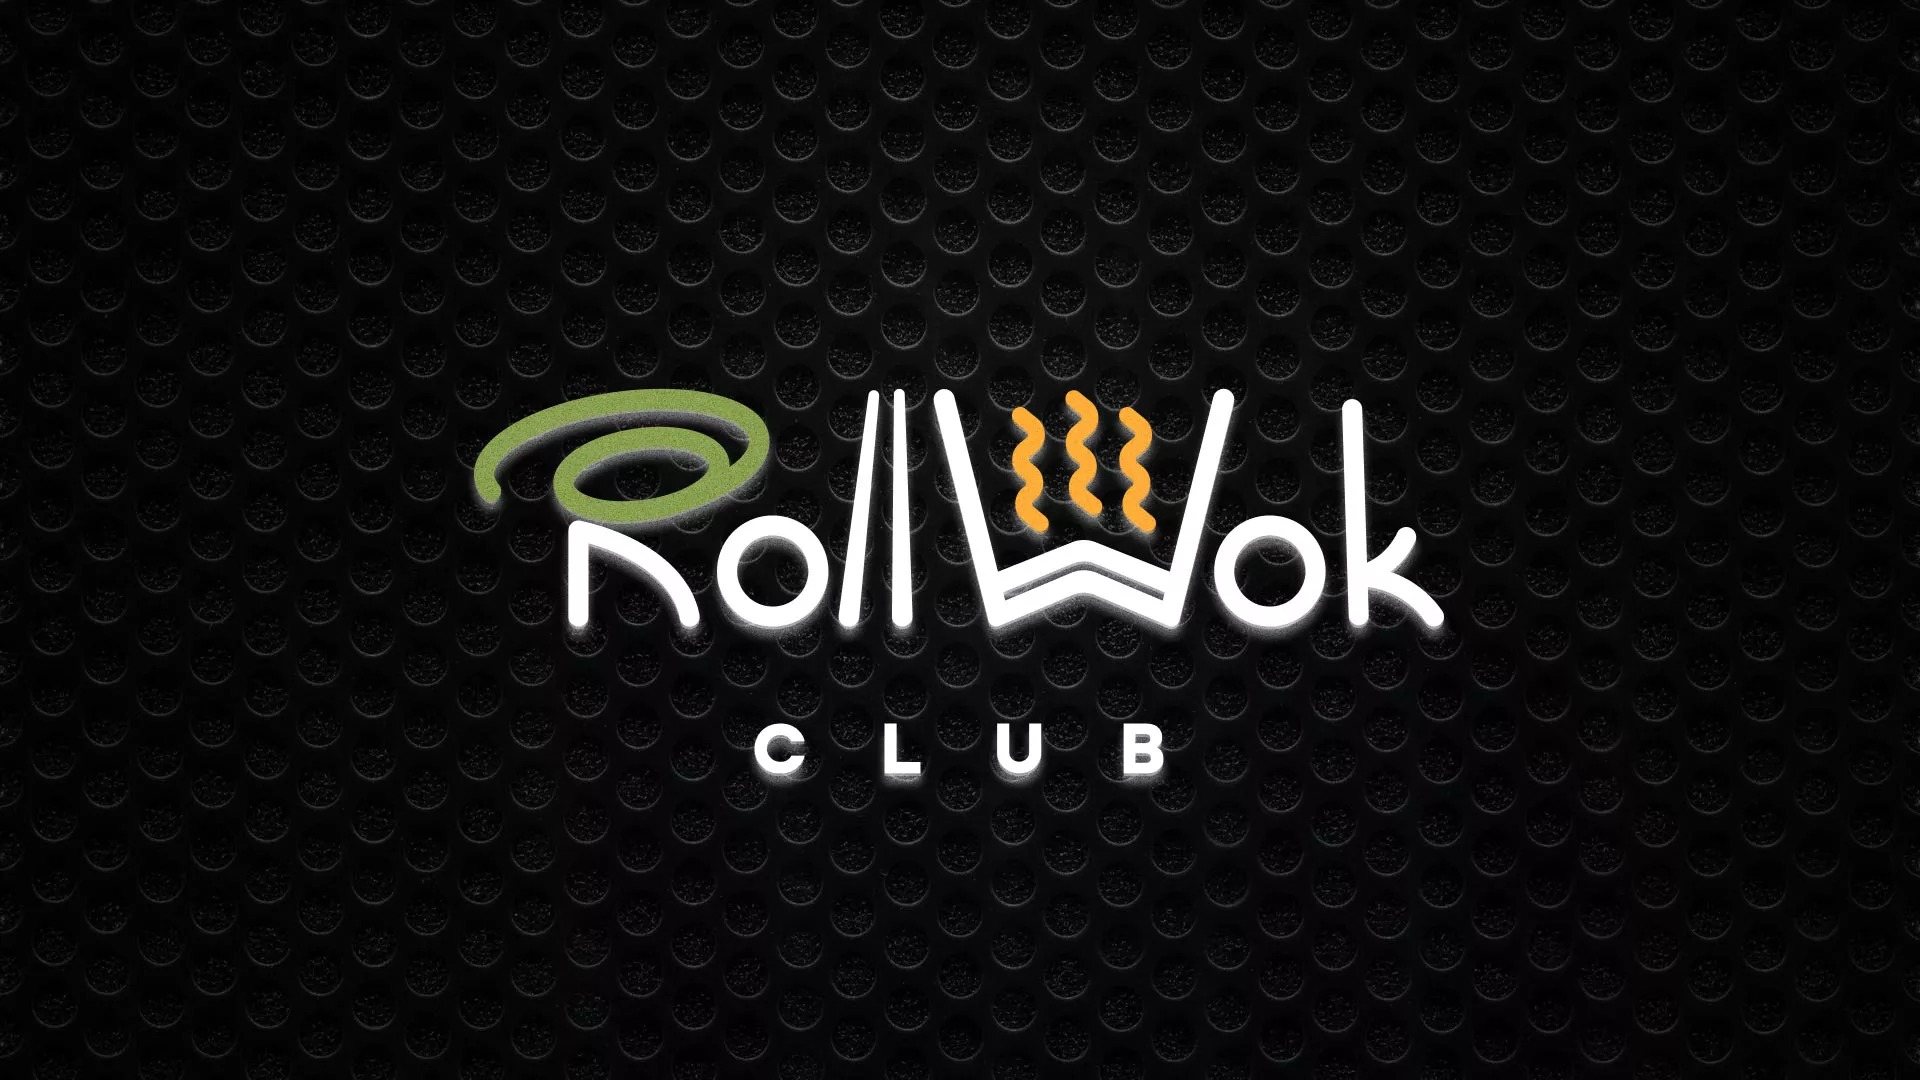 Брендирование торговых точек суши-бара «Roll Wok Club» в Кирове